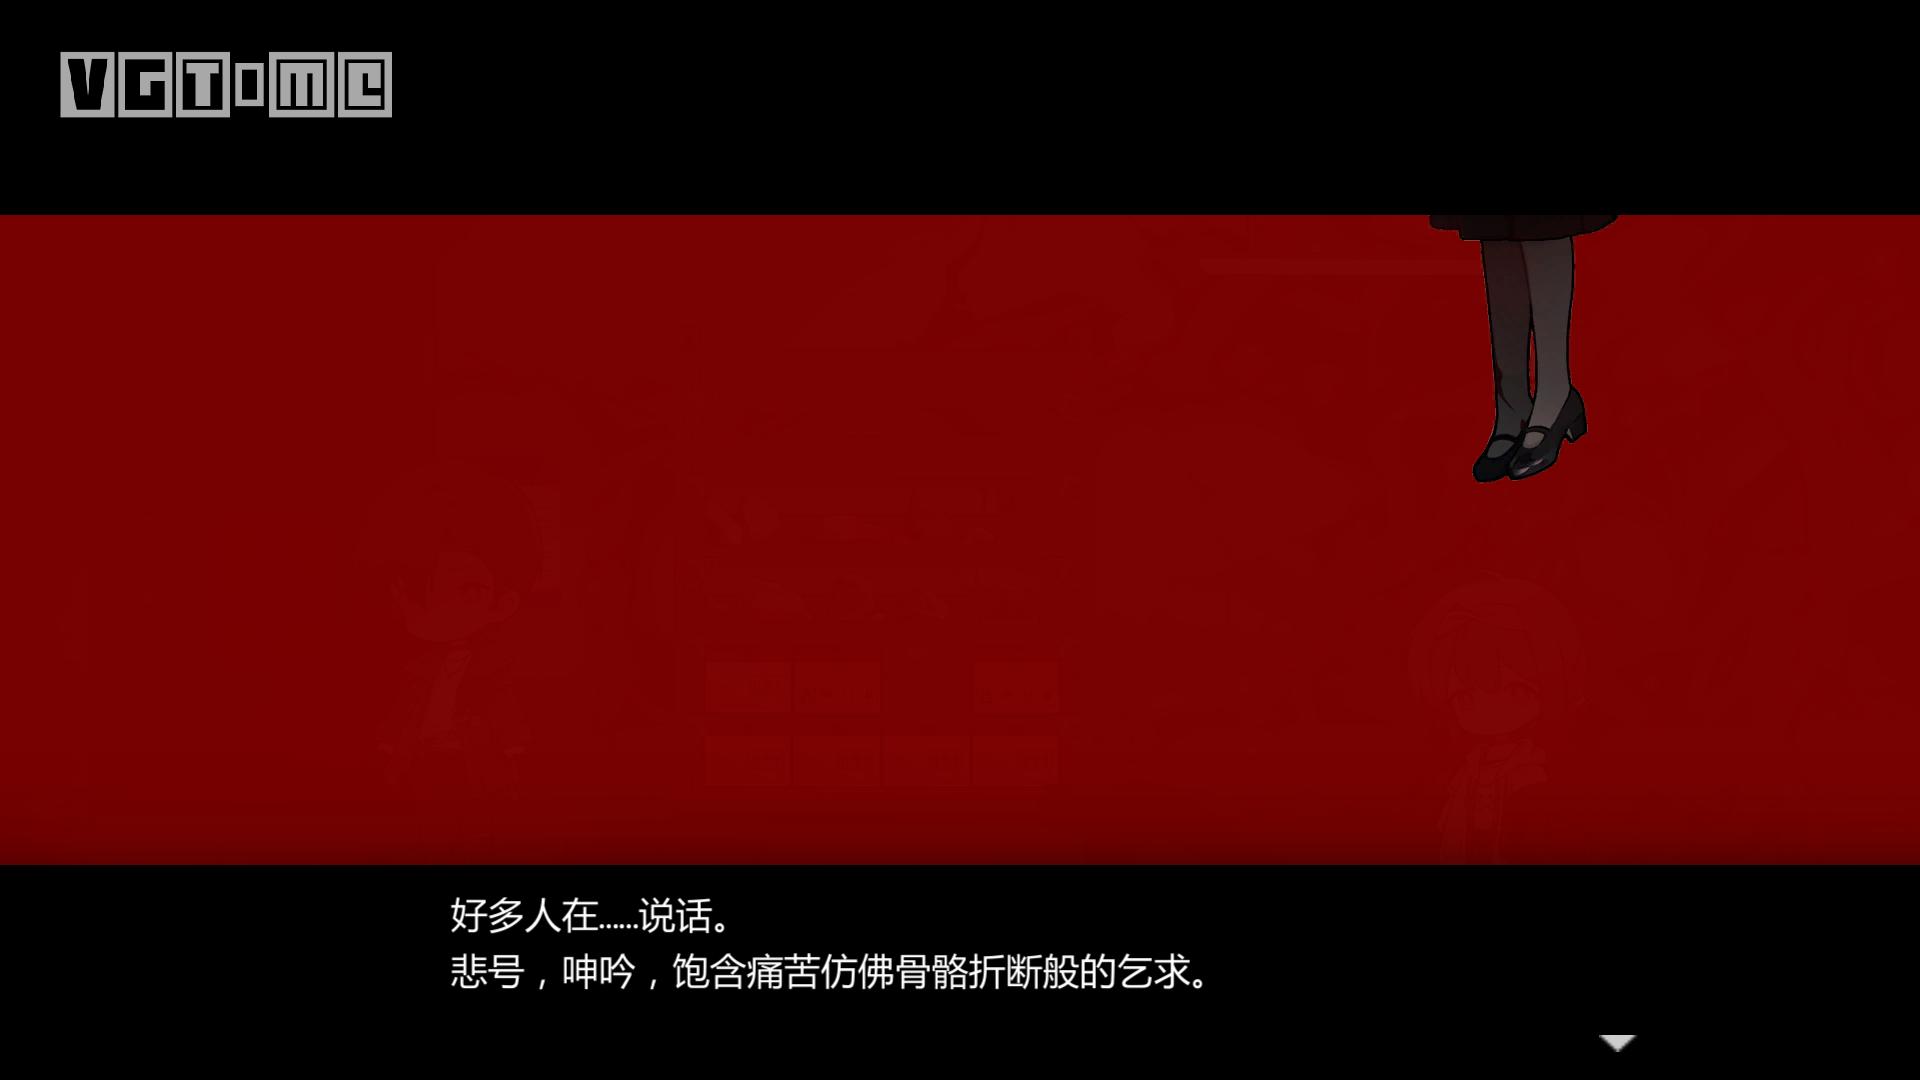 【福利】中式克蘇魯解謎遊戲《蒼白花樹繁茂之時》完整版現已上架